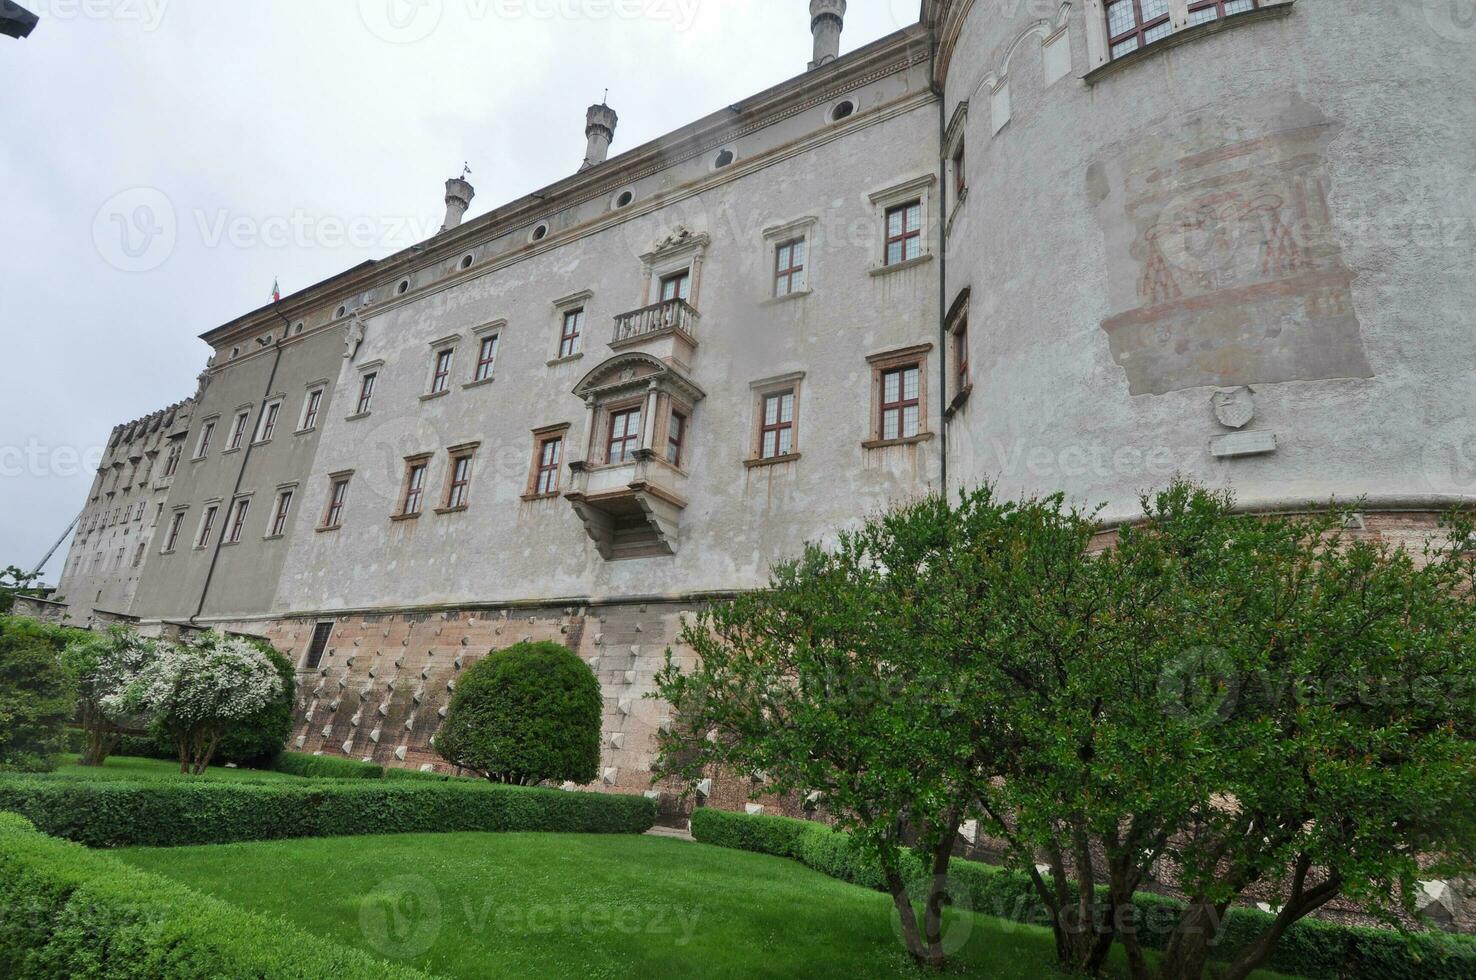 Buonconsiglio castle in Trento photo